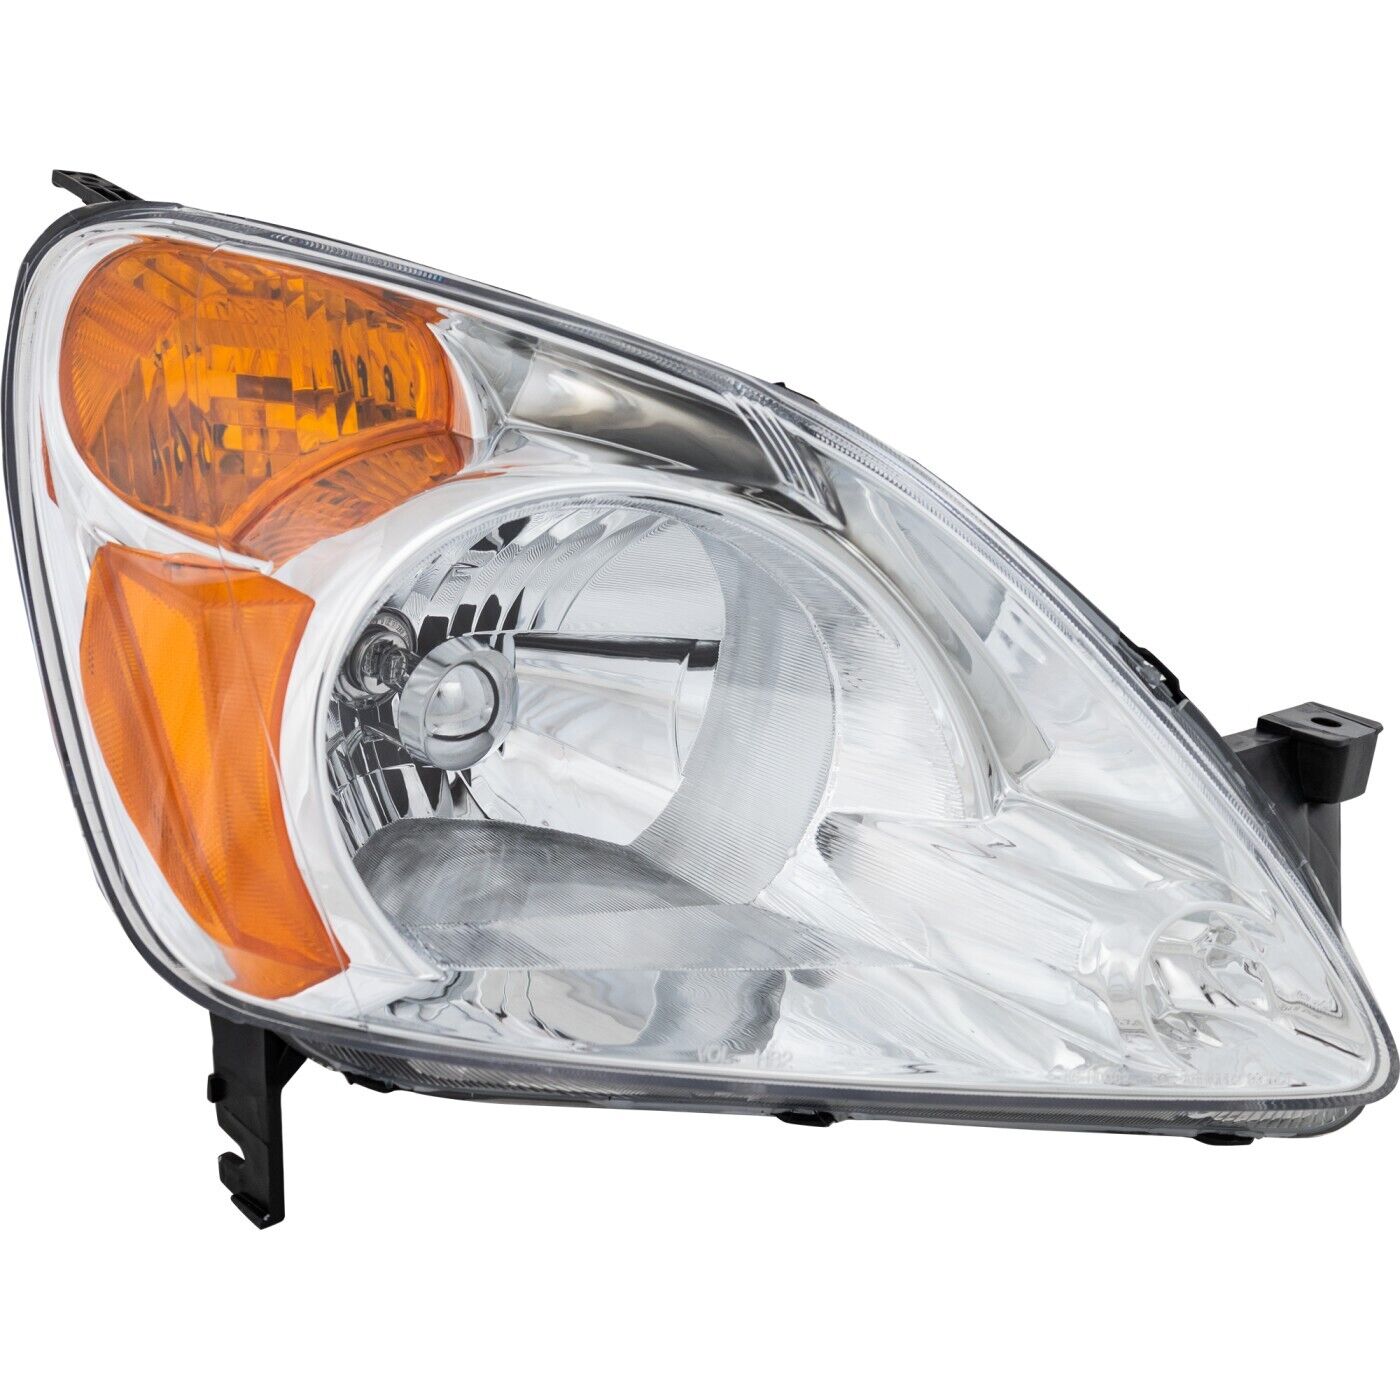 Headlight For 2002 2003 2004 Honda CR-V EX LX Models Right DOT/SAE Compliant